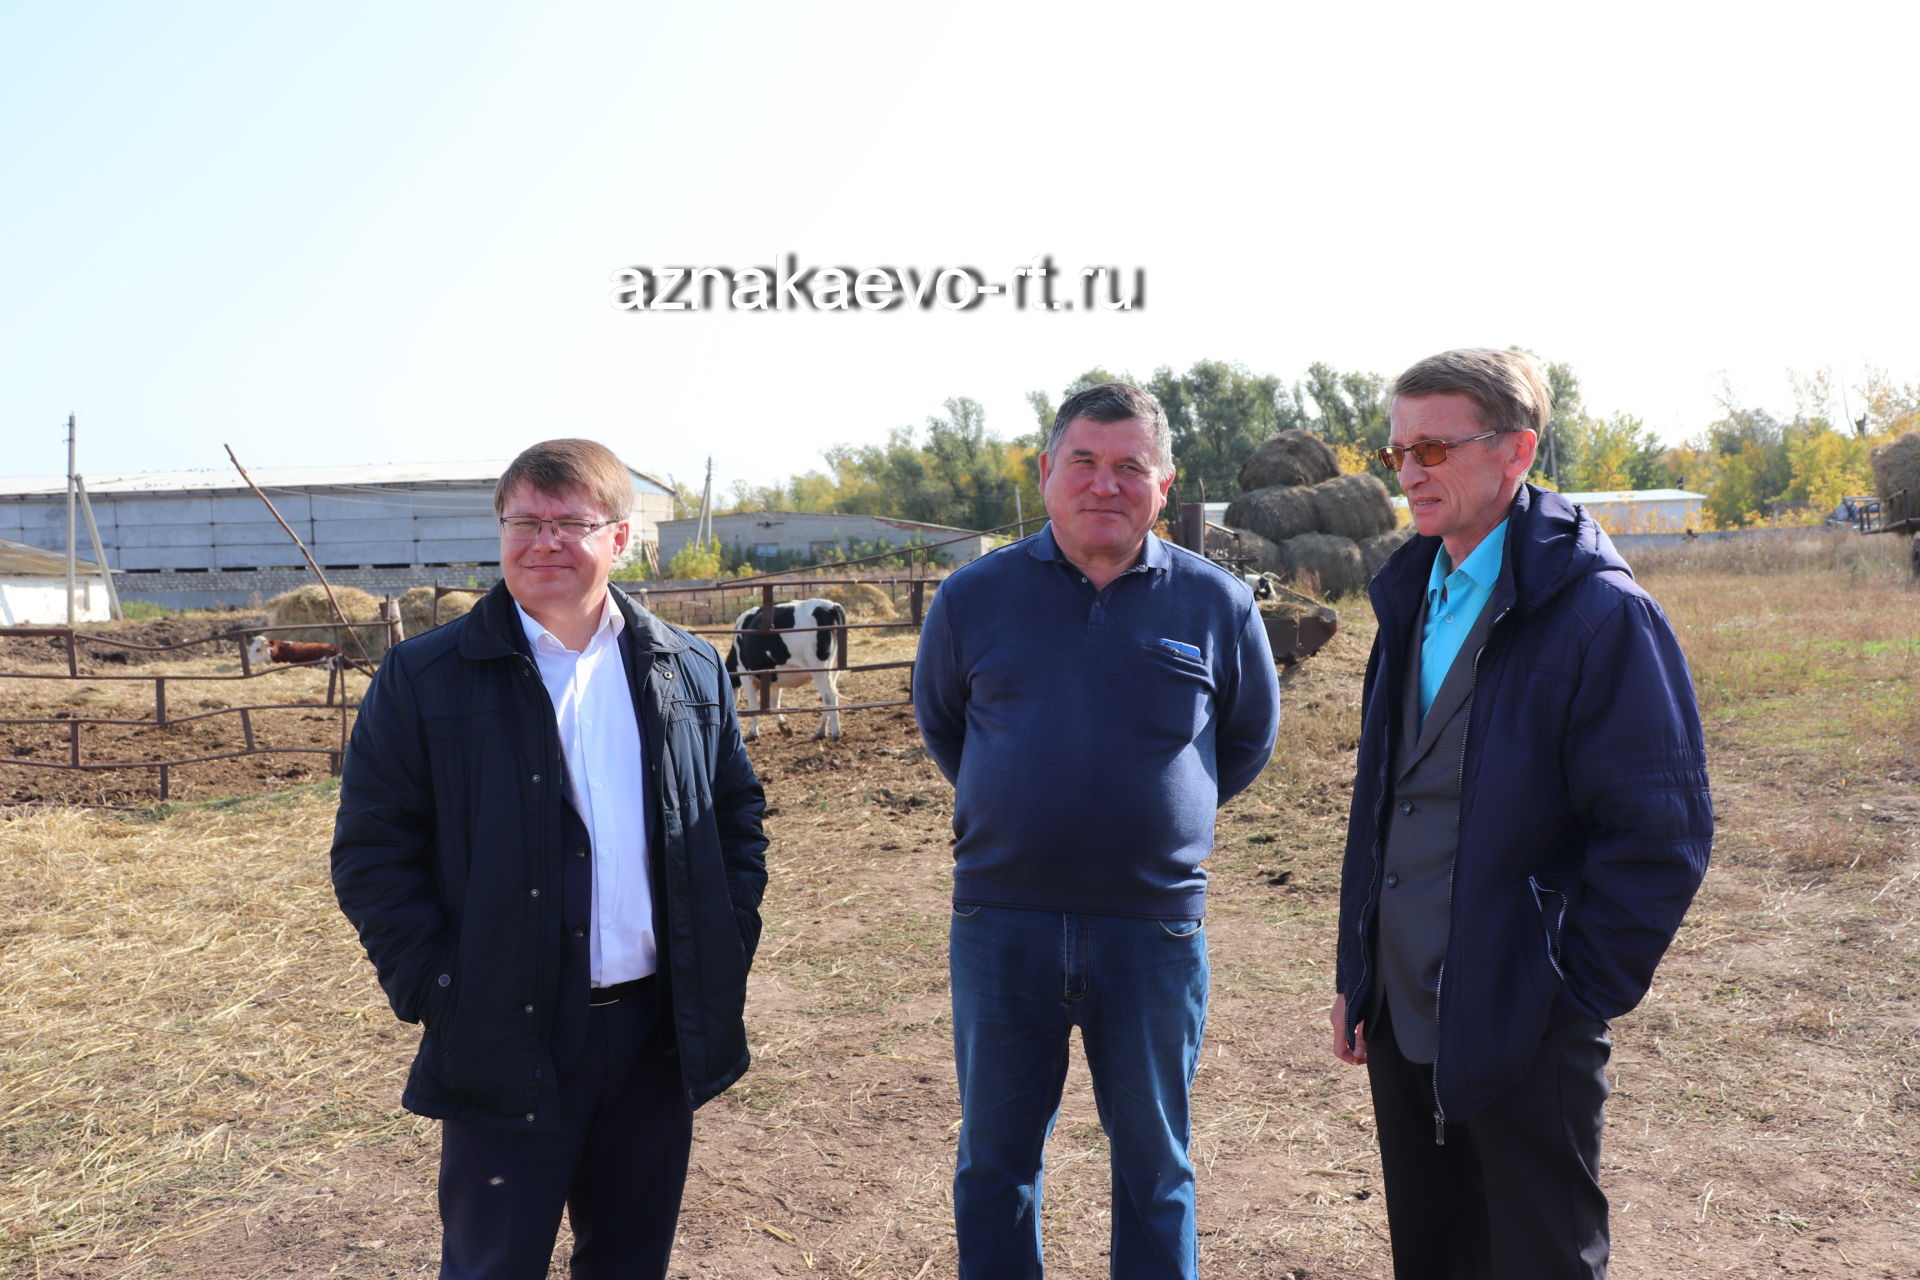 Животноводы Азнакаевского района готовятся к зимовке скота